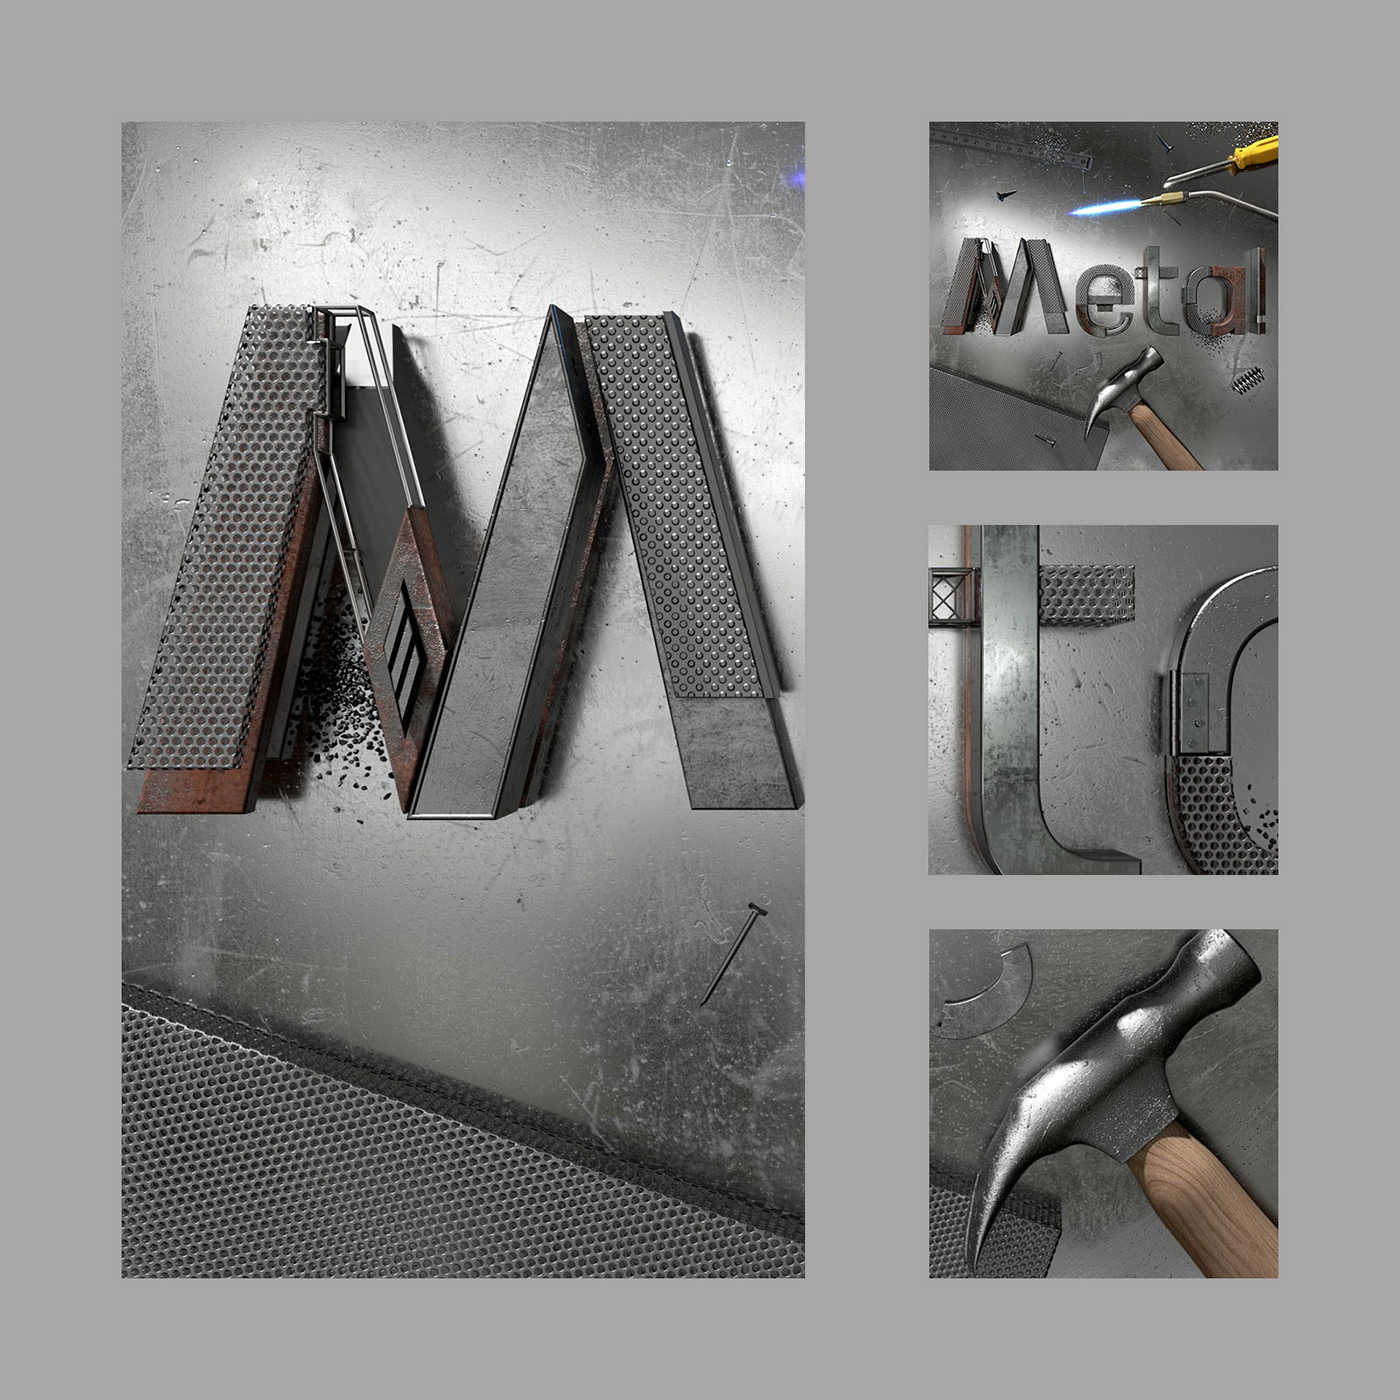 type metal Design Graphic ILLUSTRATION  CGI 3D